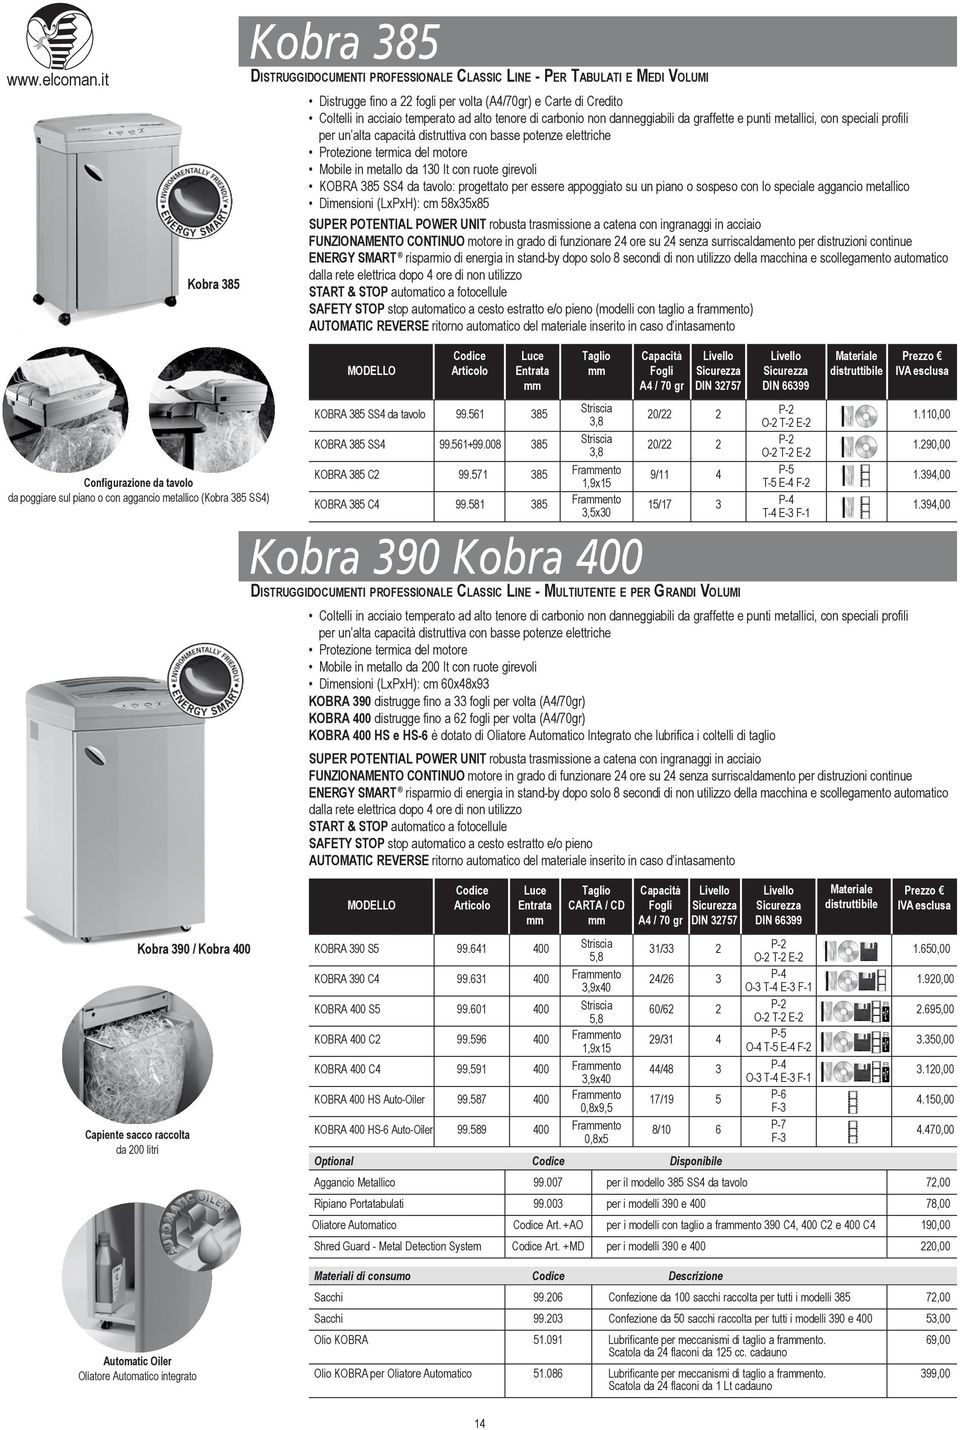 KOBRA 385 SS4 da tavolo: progettato per essere appoggiato su un piano o sospeso con lo speciale aggancio metallico Dimensioni (LxPxH): cm 58x35x85 ENERGY SMART risparmio di energia in stand-by dopo